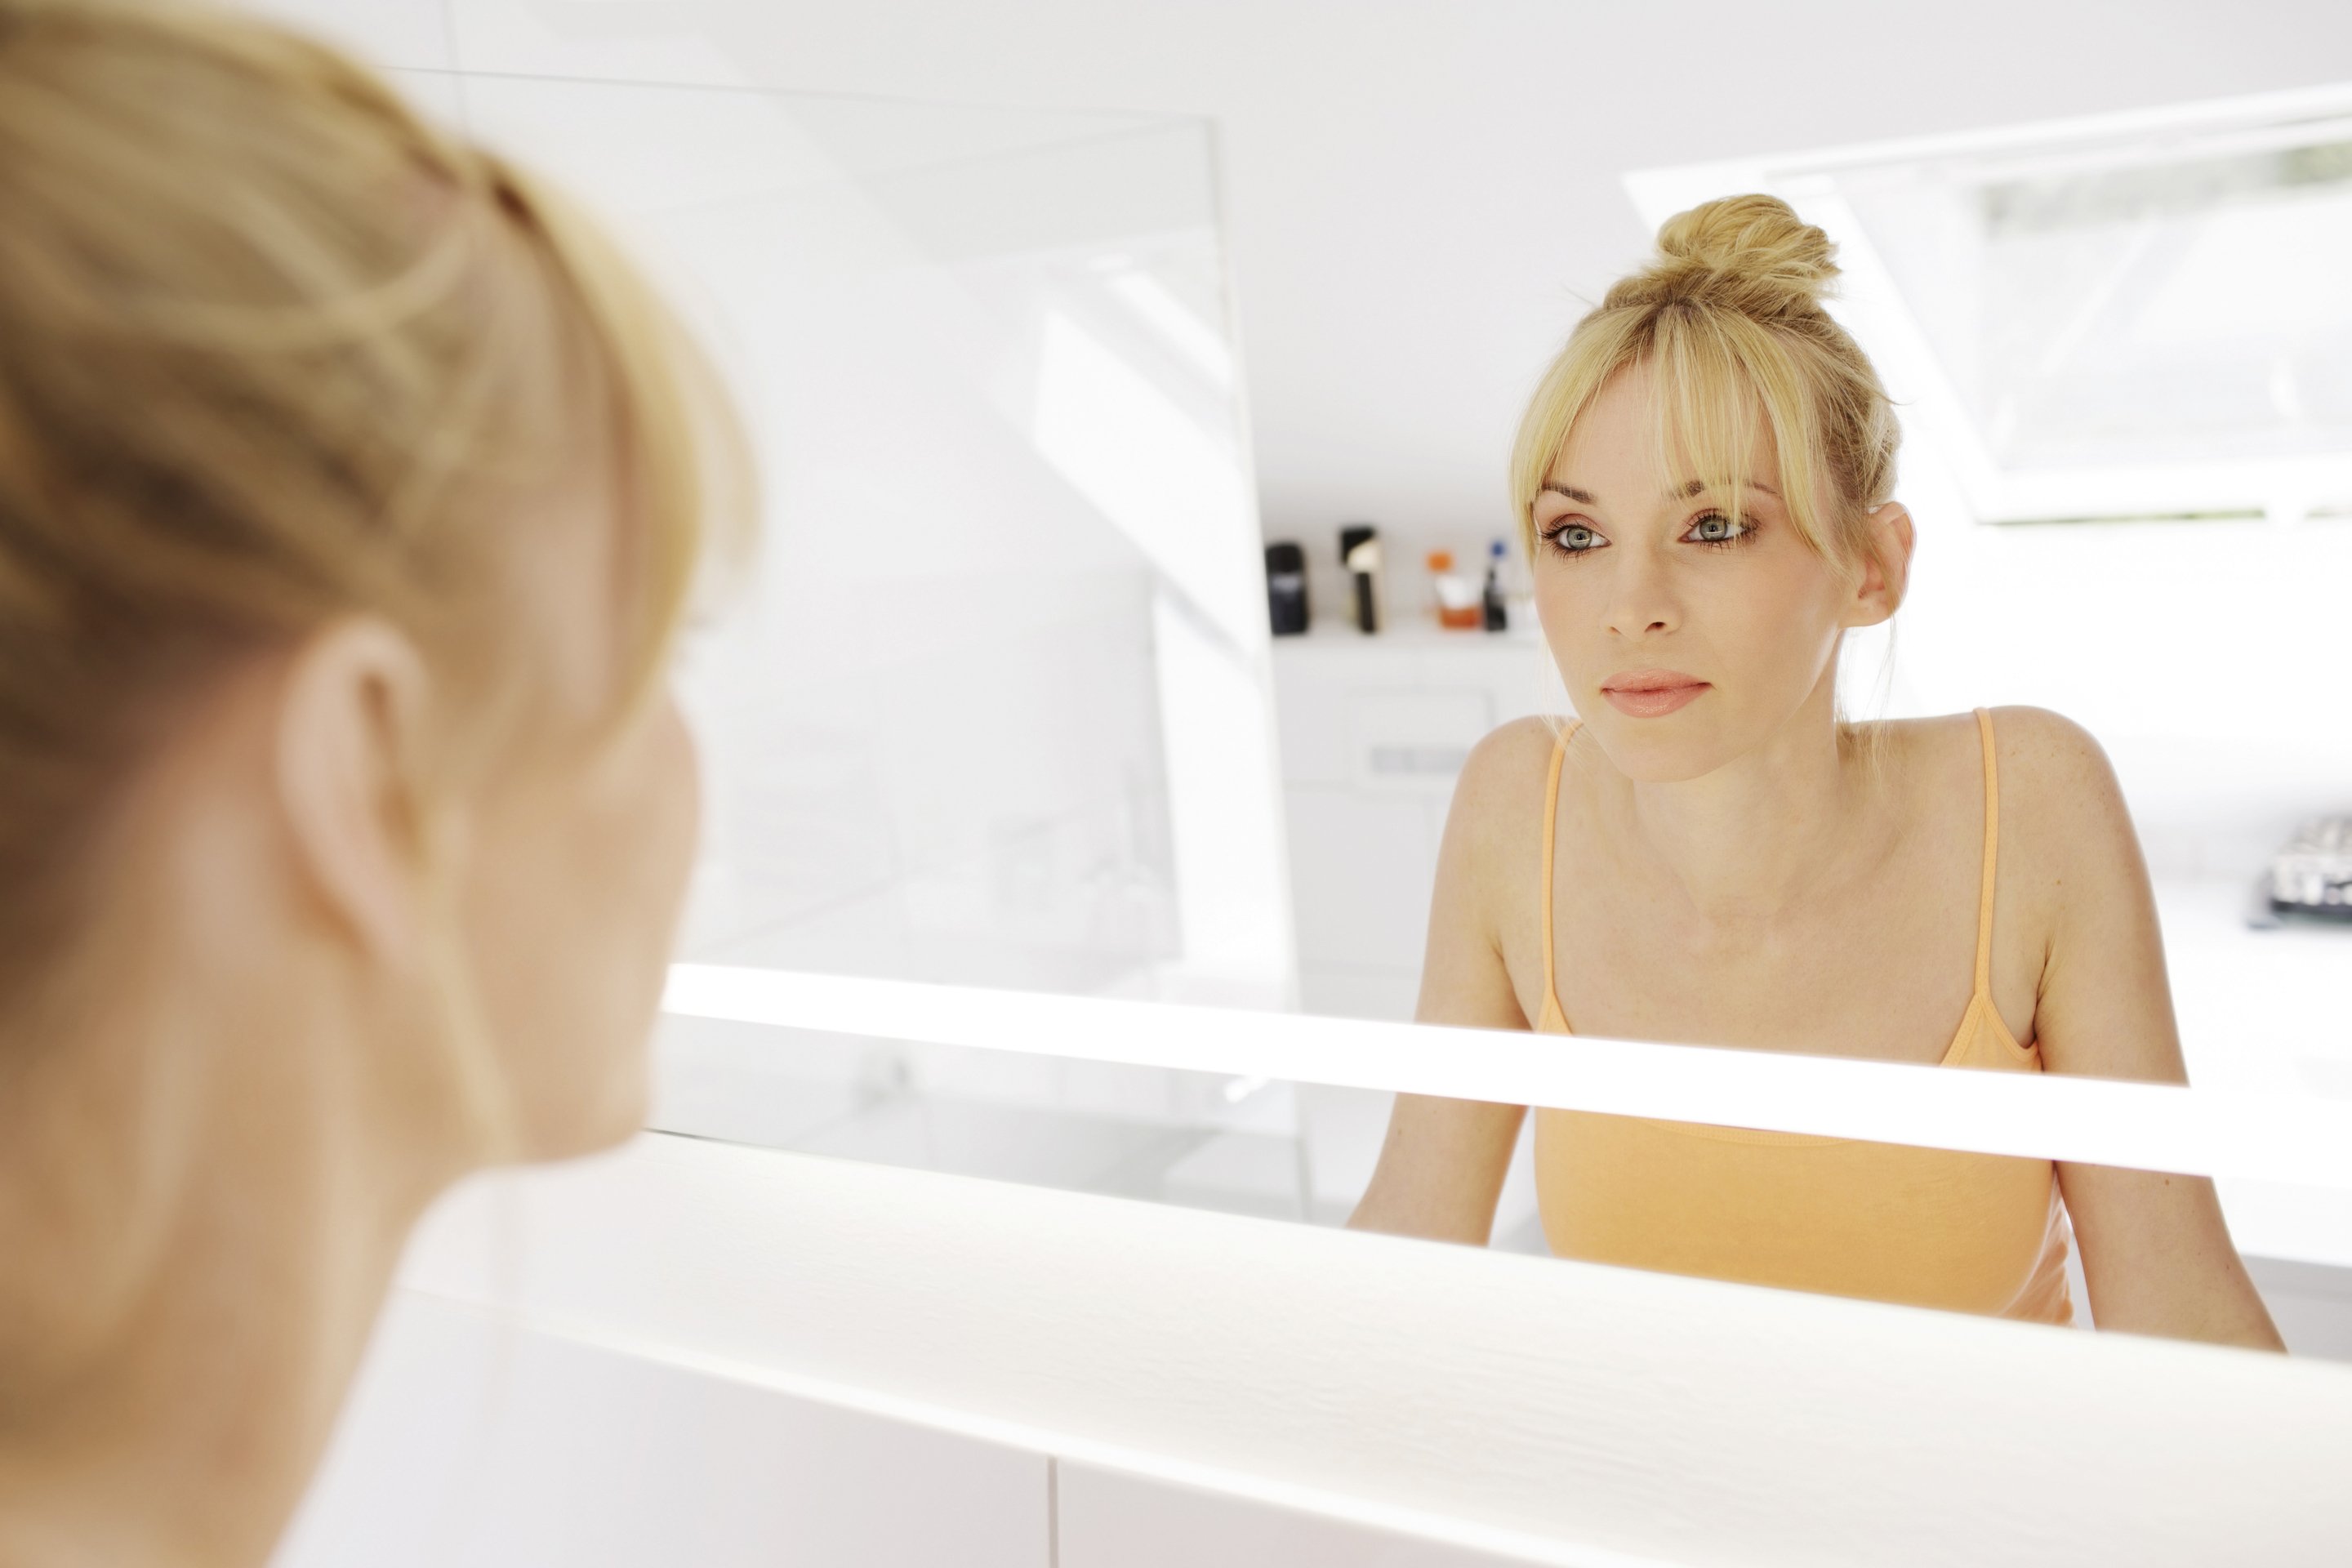 Ироничная женщина. Женщина перед зеркалом в ванной. Женщина утром перед зеркалом. Девушка смотрит в зеркало. Девушка утром перед зеркалом.